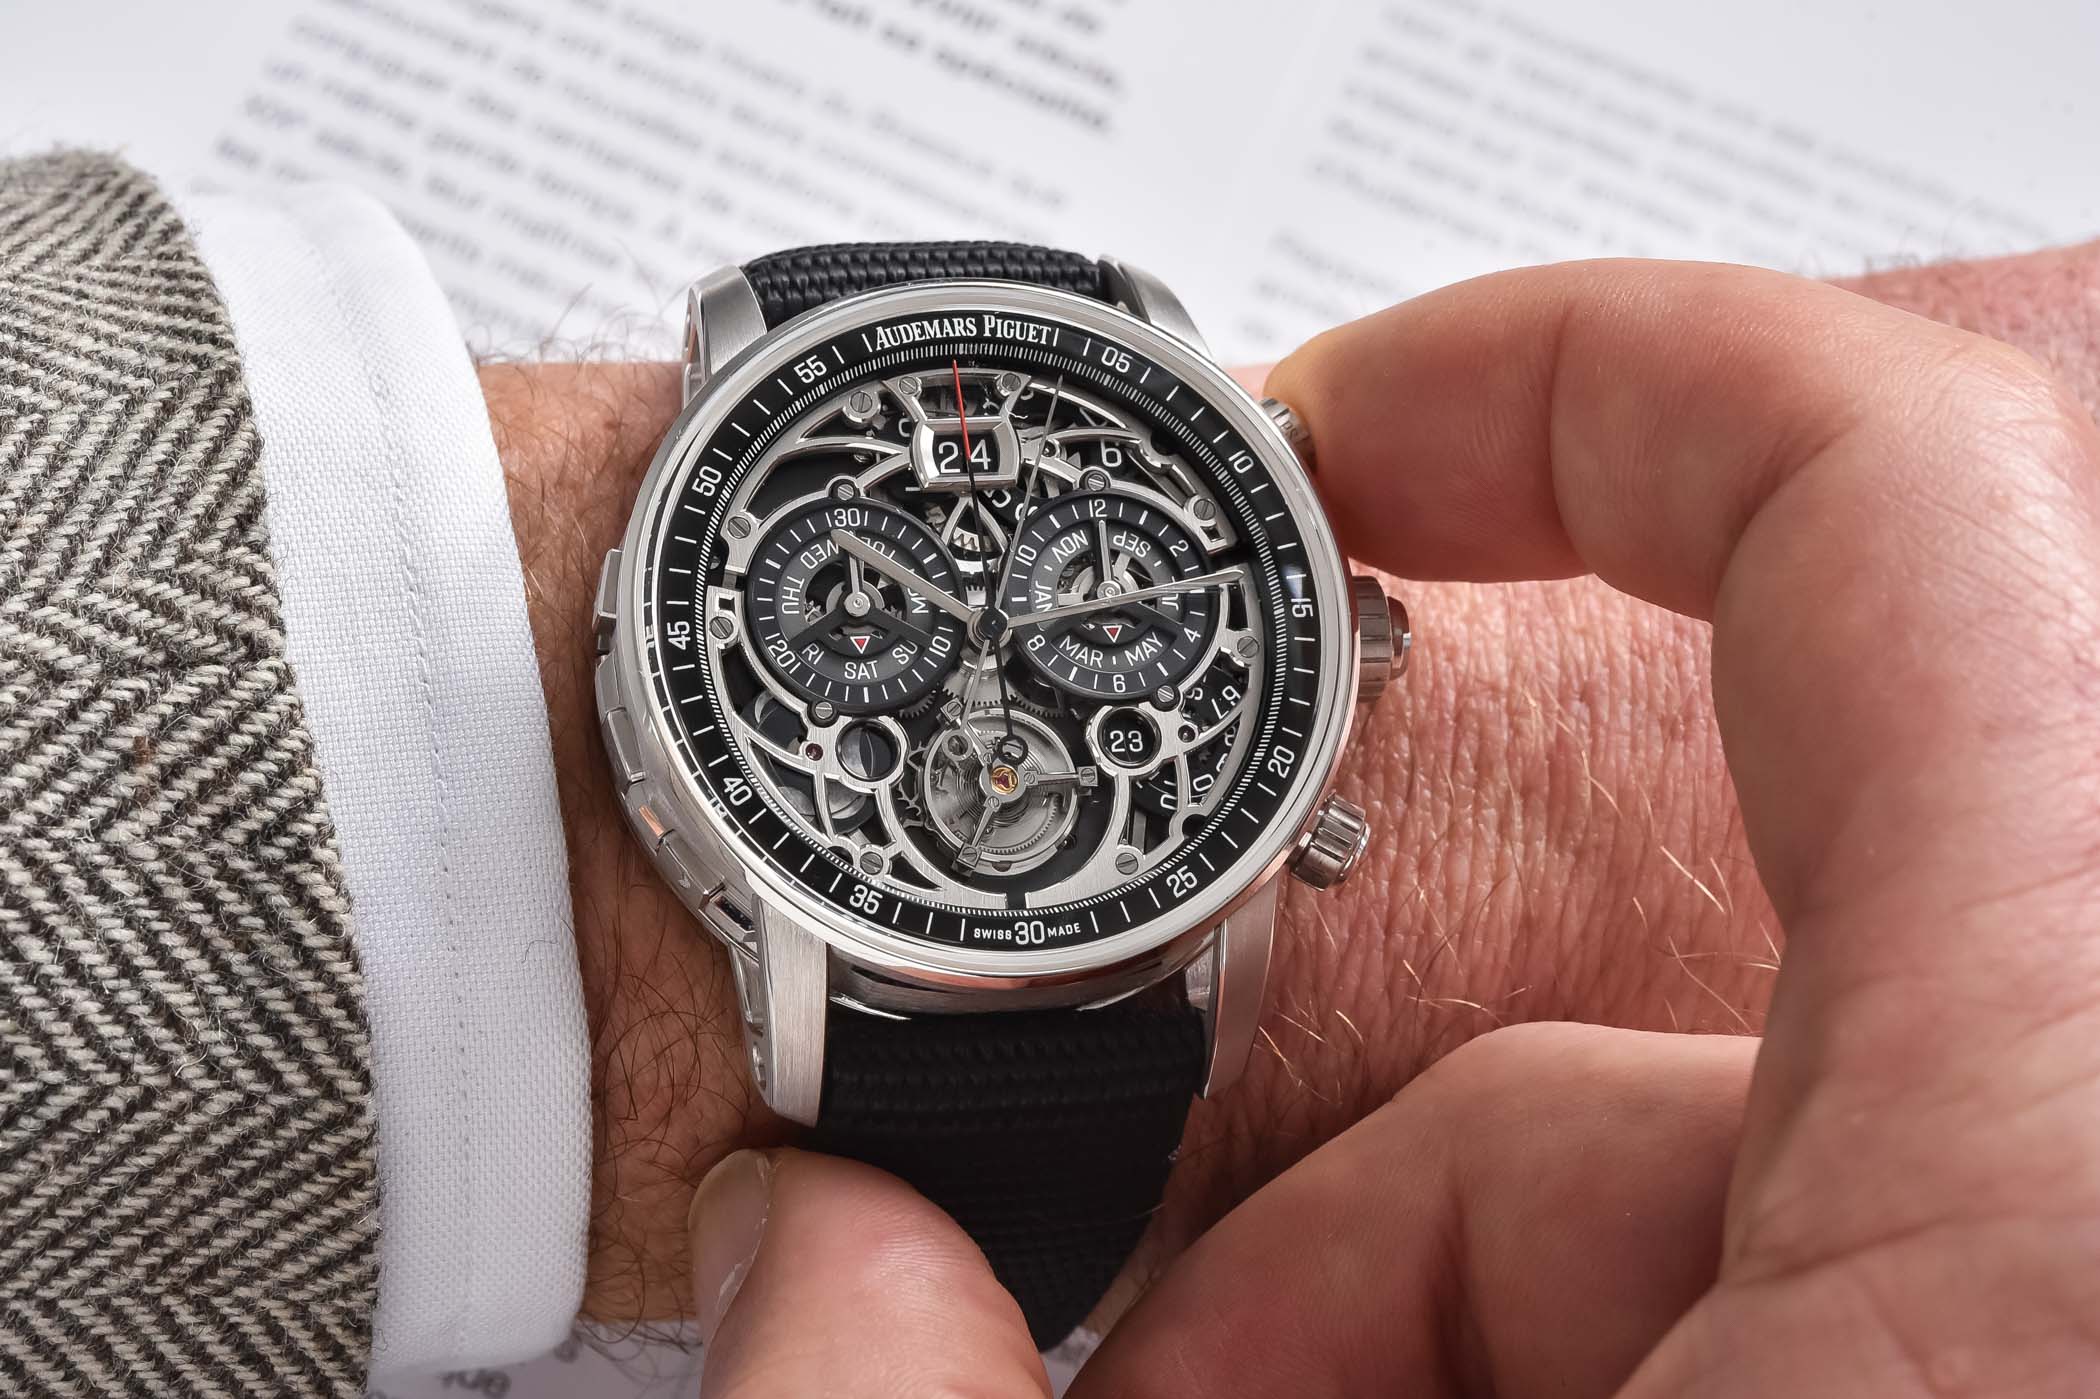 Code 11.59 Universelle Audemars Piguet Ultra-Complication RD#4 - Most Complicated Wristwatch Audemars